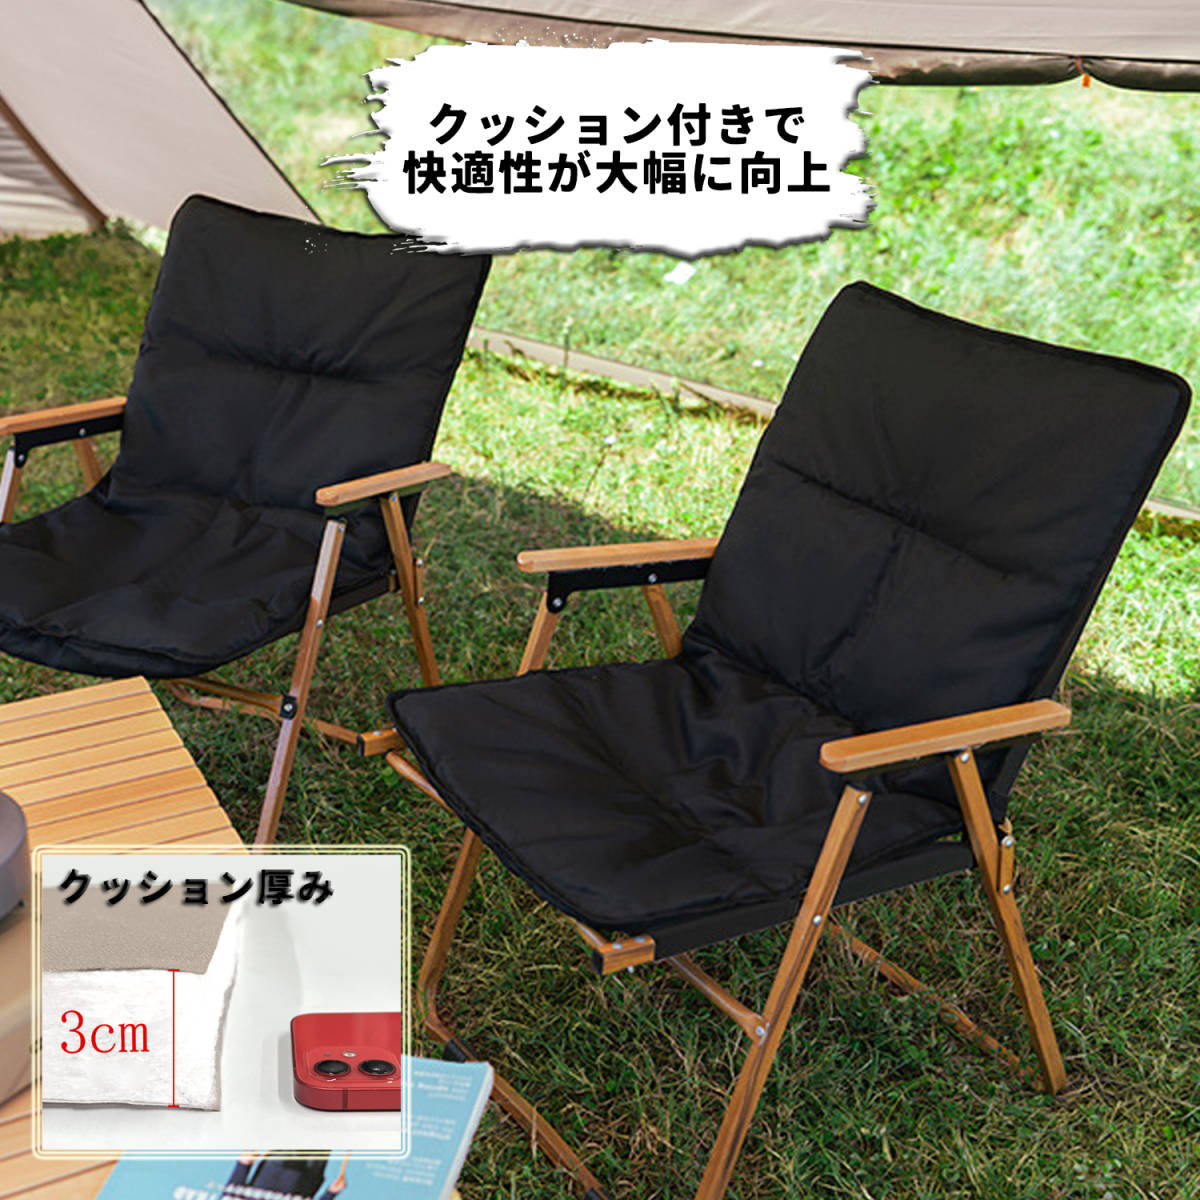 ウッドチェア 木製イス 椅子 黒 軽量 キャンプ アウトドア ソロ ファミリー グループ 快適 オシャレ 